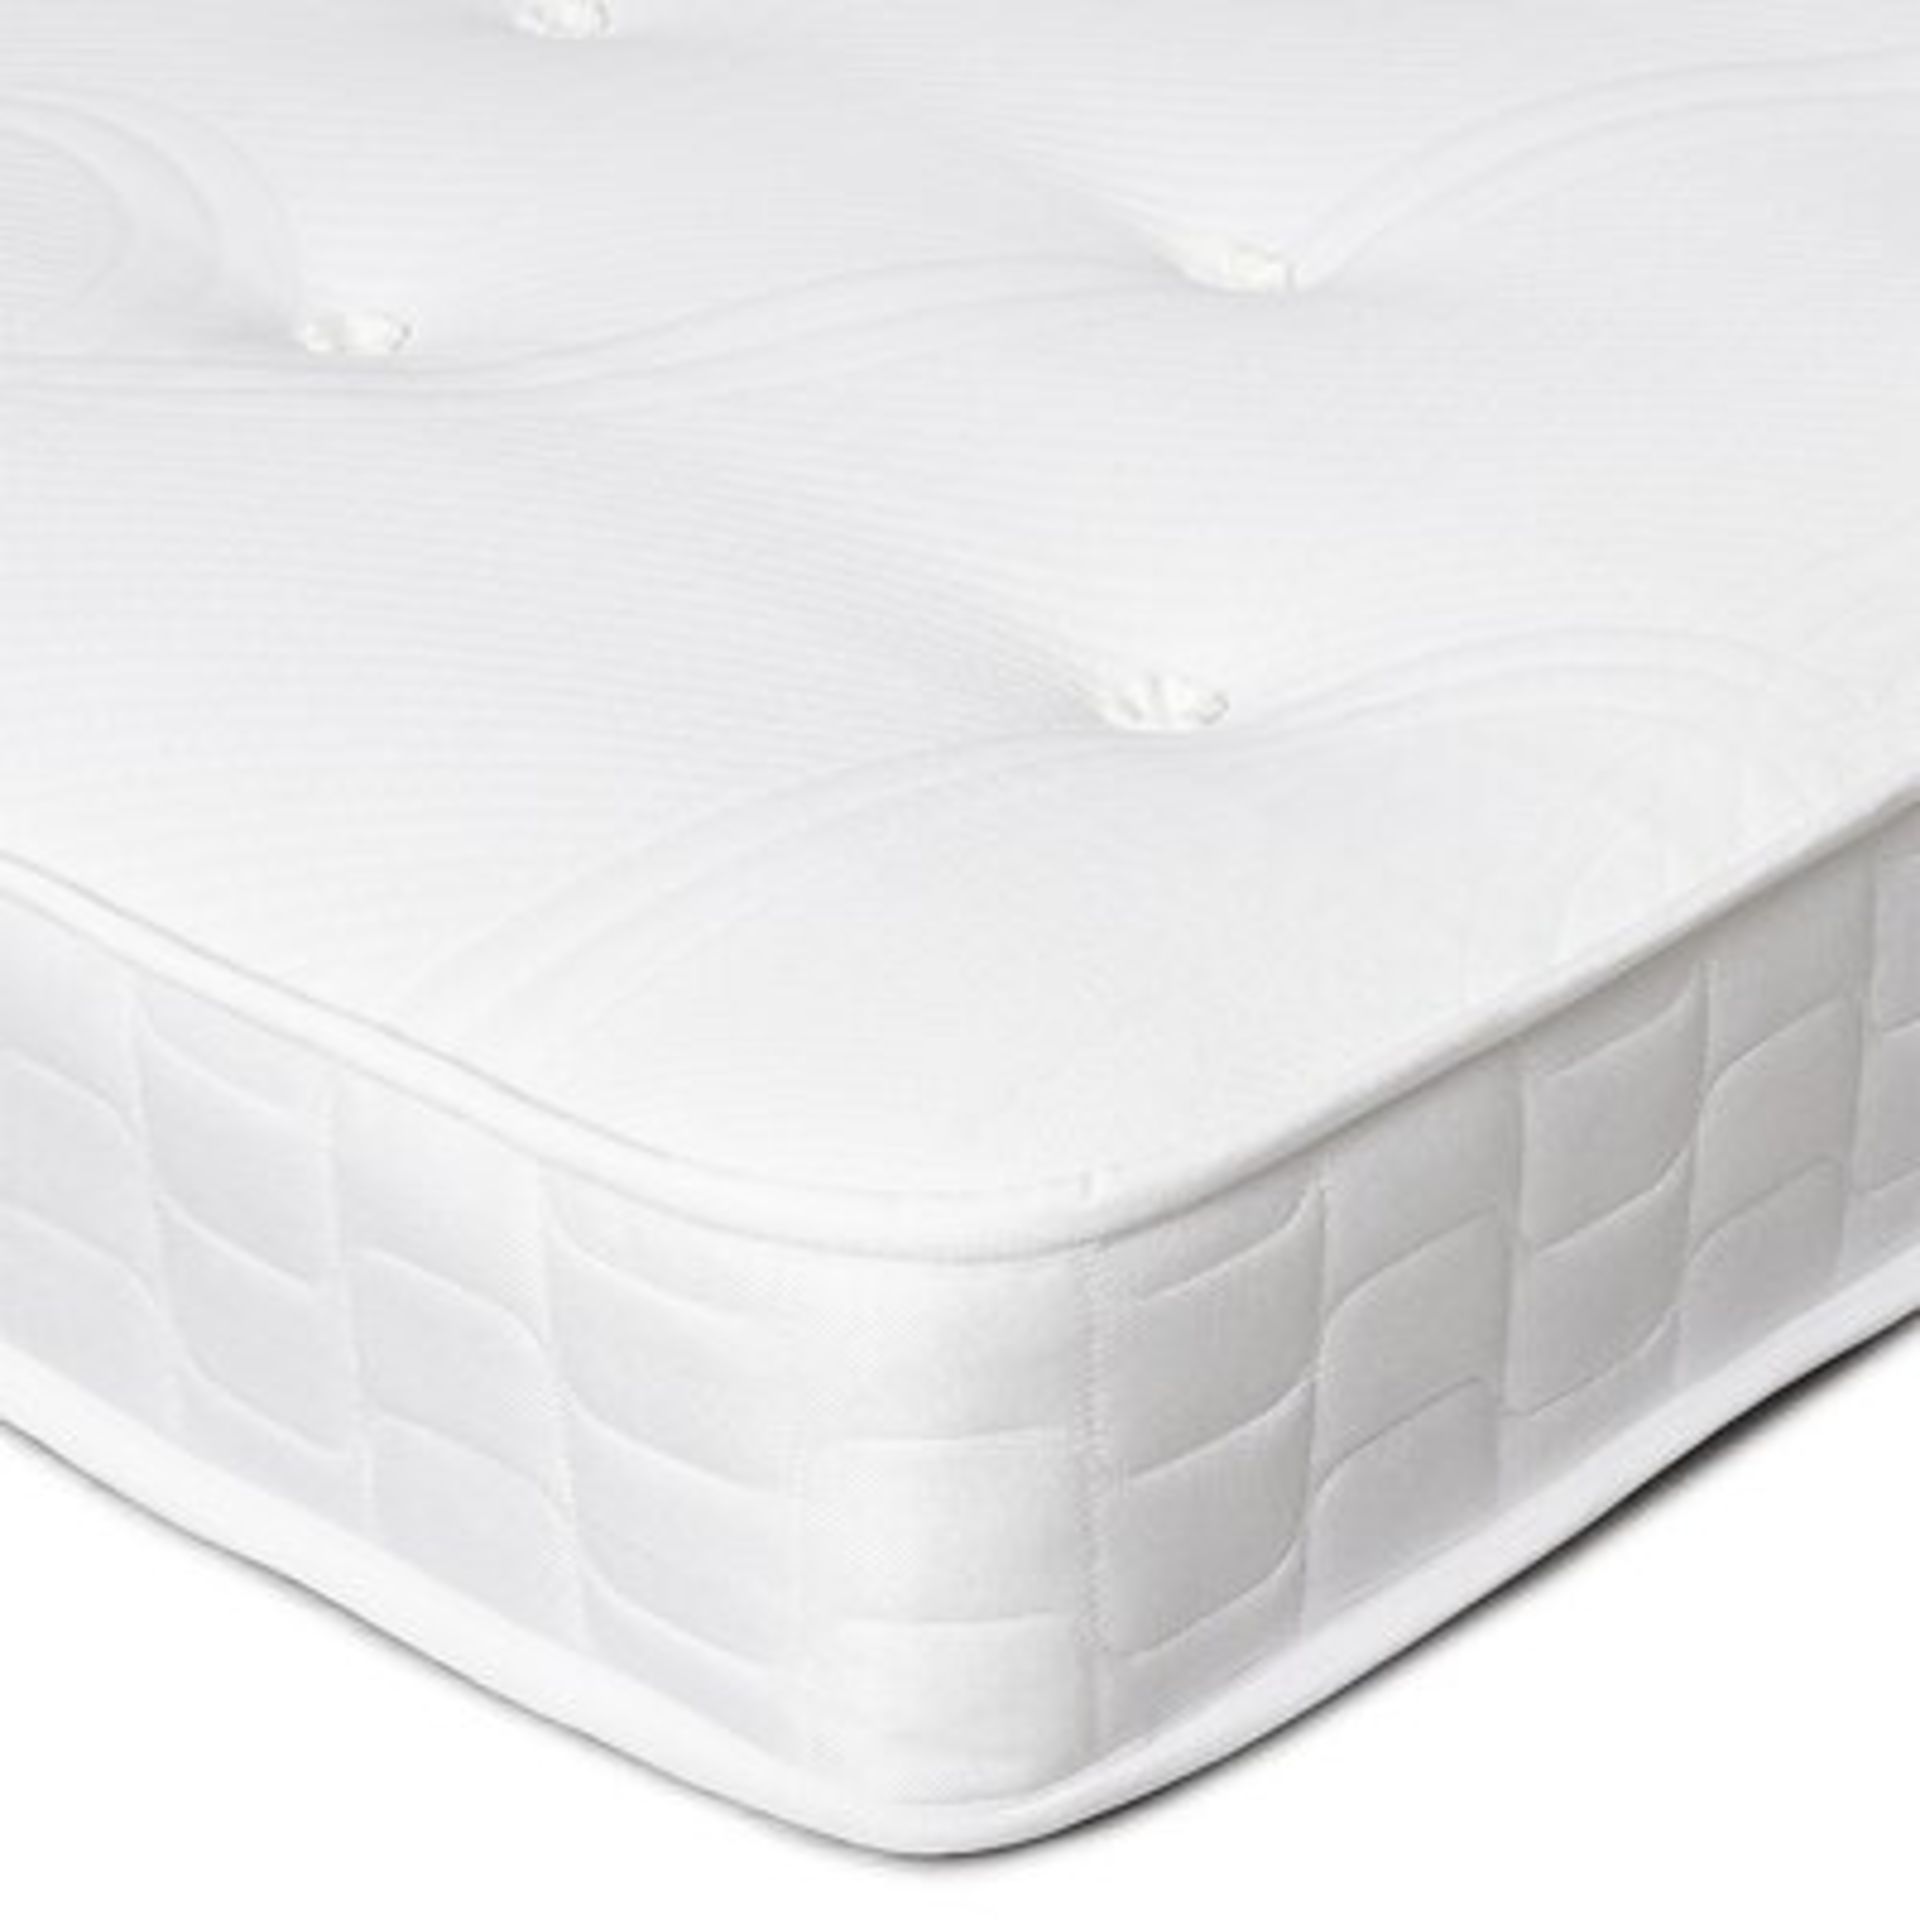 Wayfair Sleep Memory Open Coil Mattress. 200x200cm. This medium-firm mattress has been designed to - Image 2 of 2